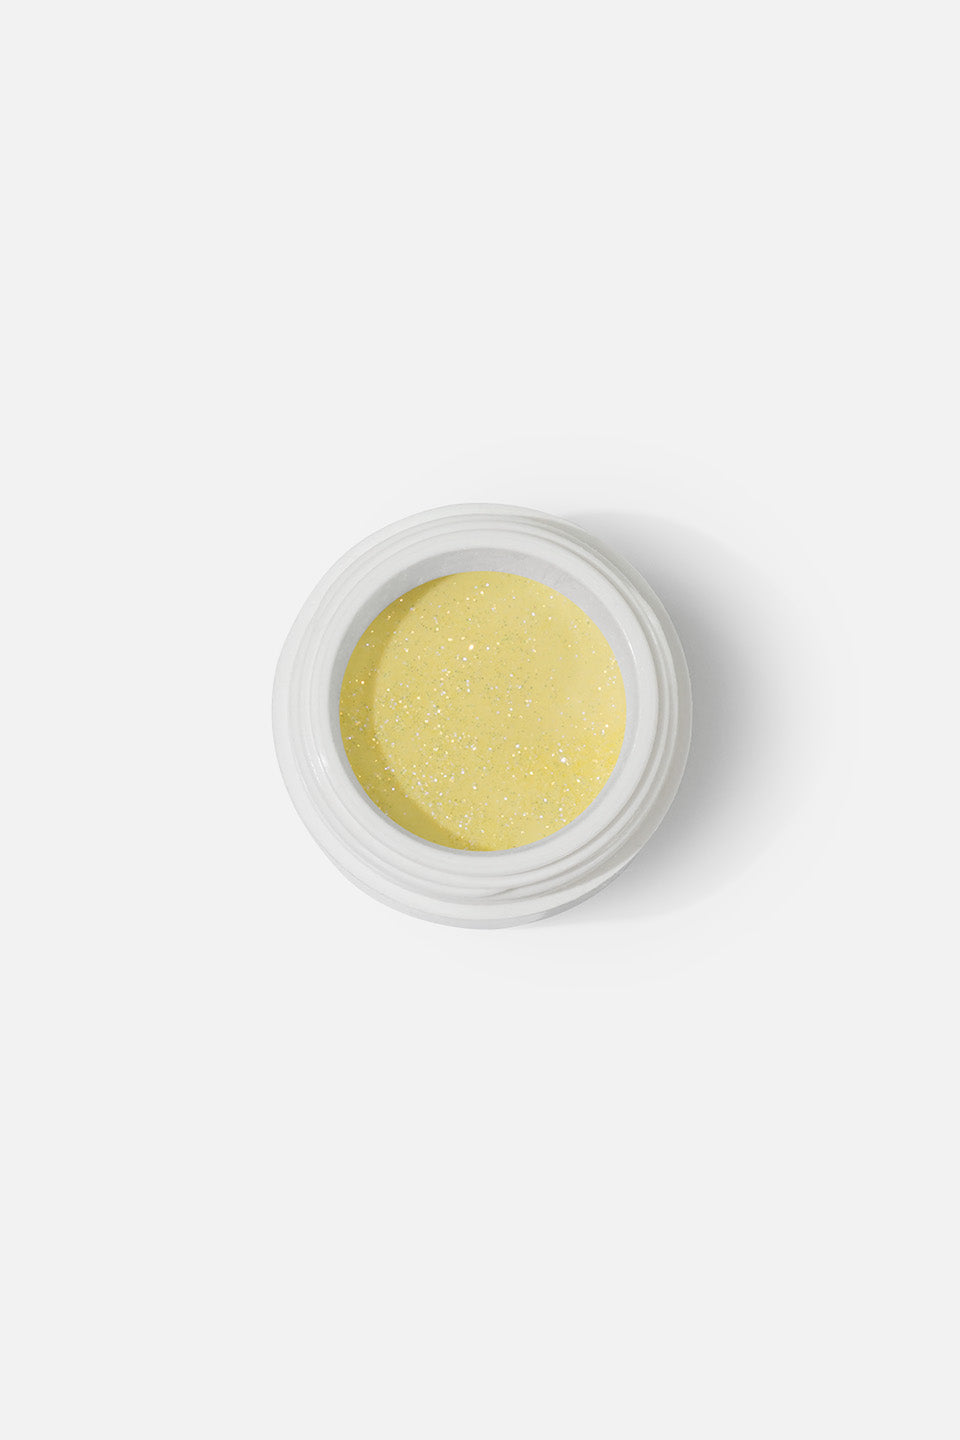 Polvo acrílico amarillo limón glitter 3 g